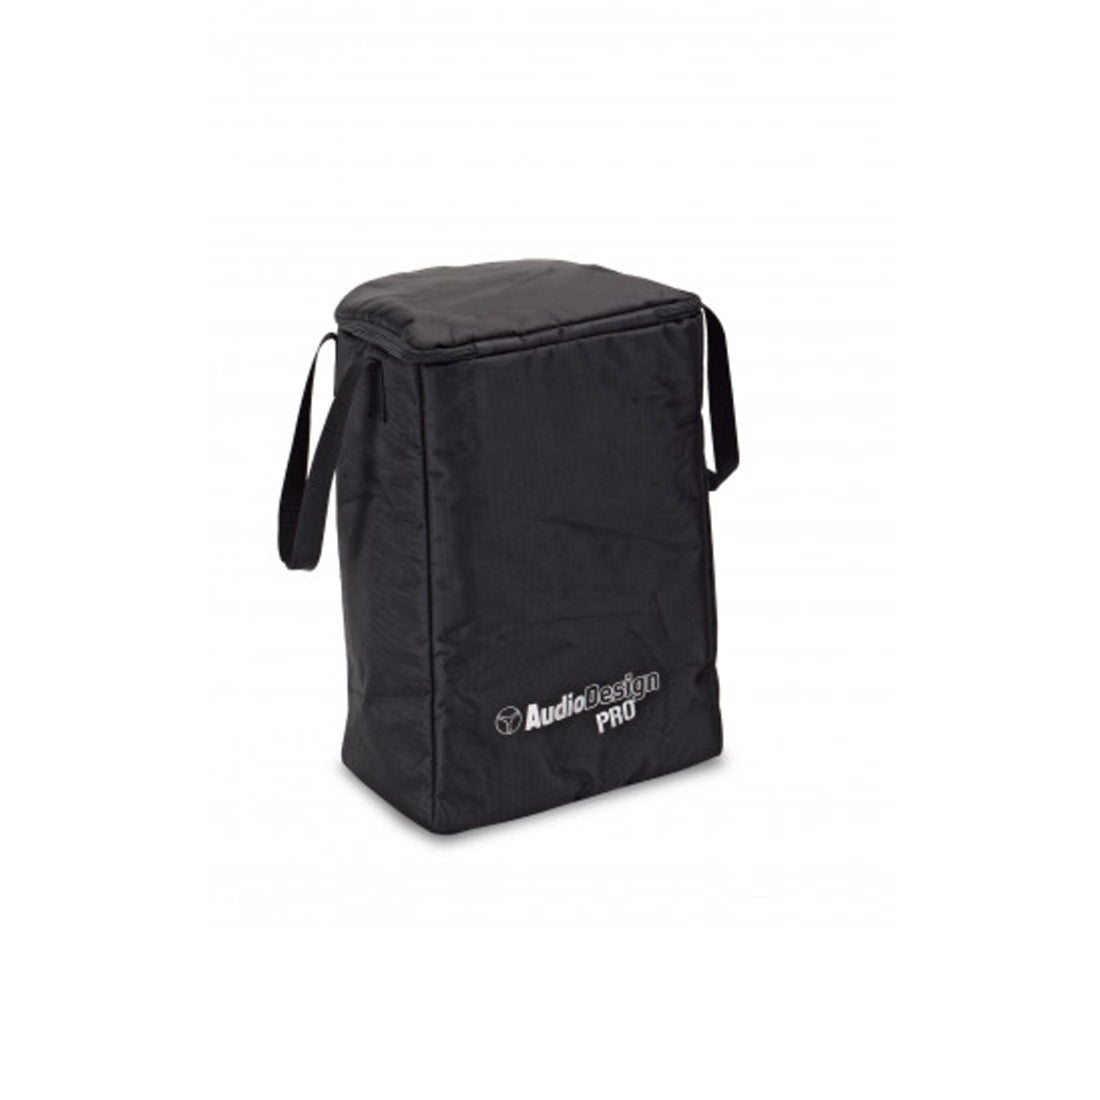 AudioDesign Pro Portable Speaker Bag, Waterproof, Padded Speaker Case H 43.5cm